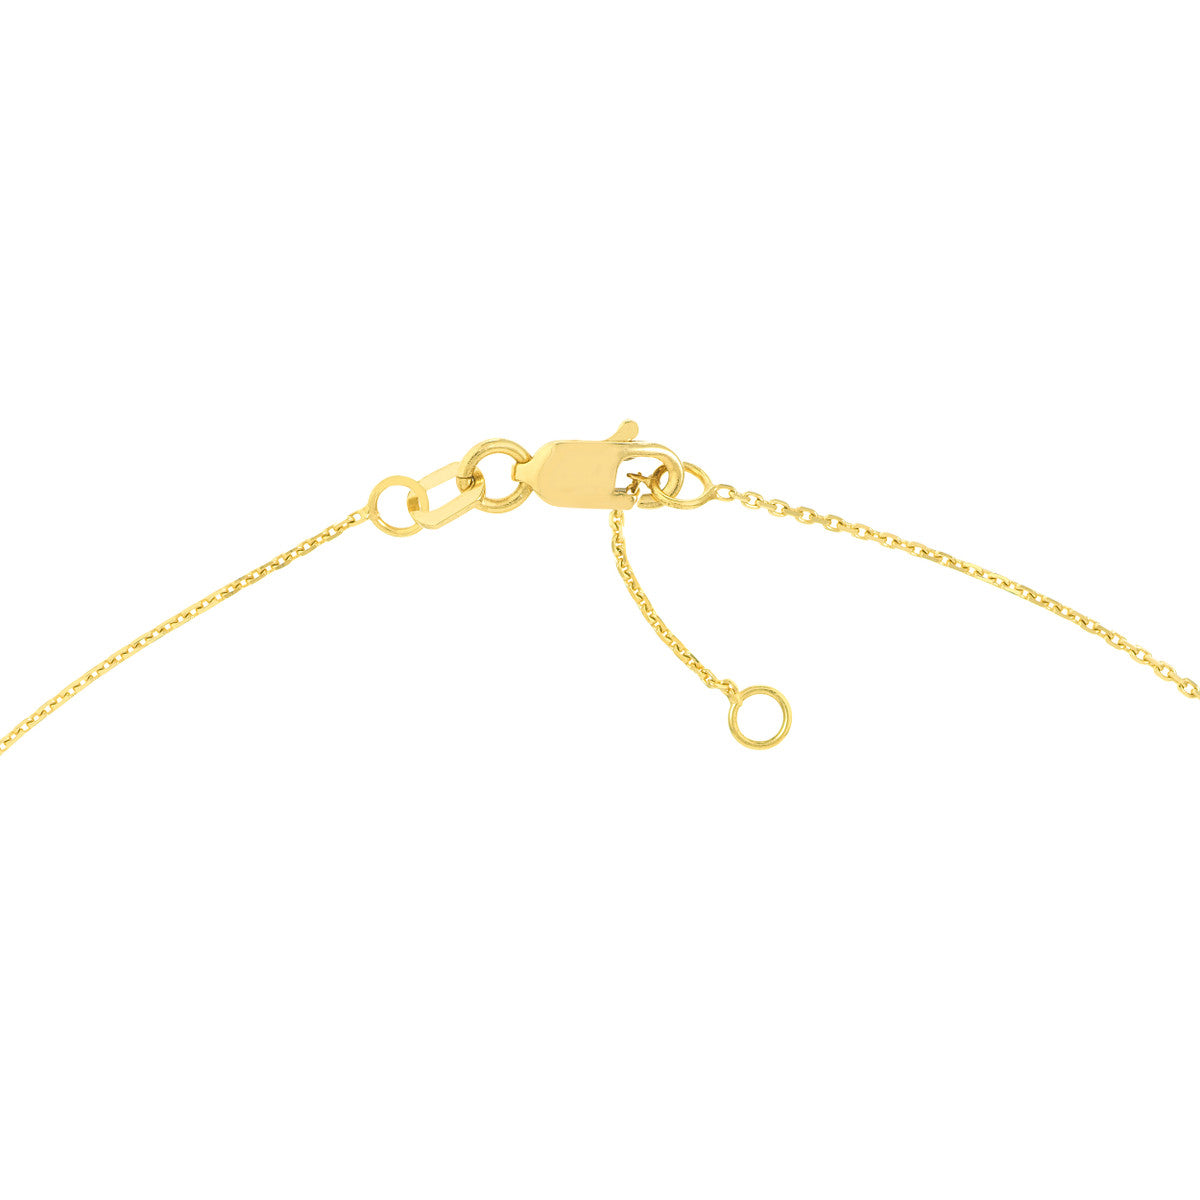 14k Yellow Gold Enamel Sideways Cross Bracelet on woman's wrist